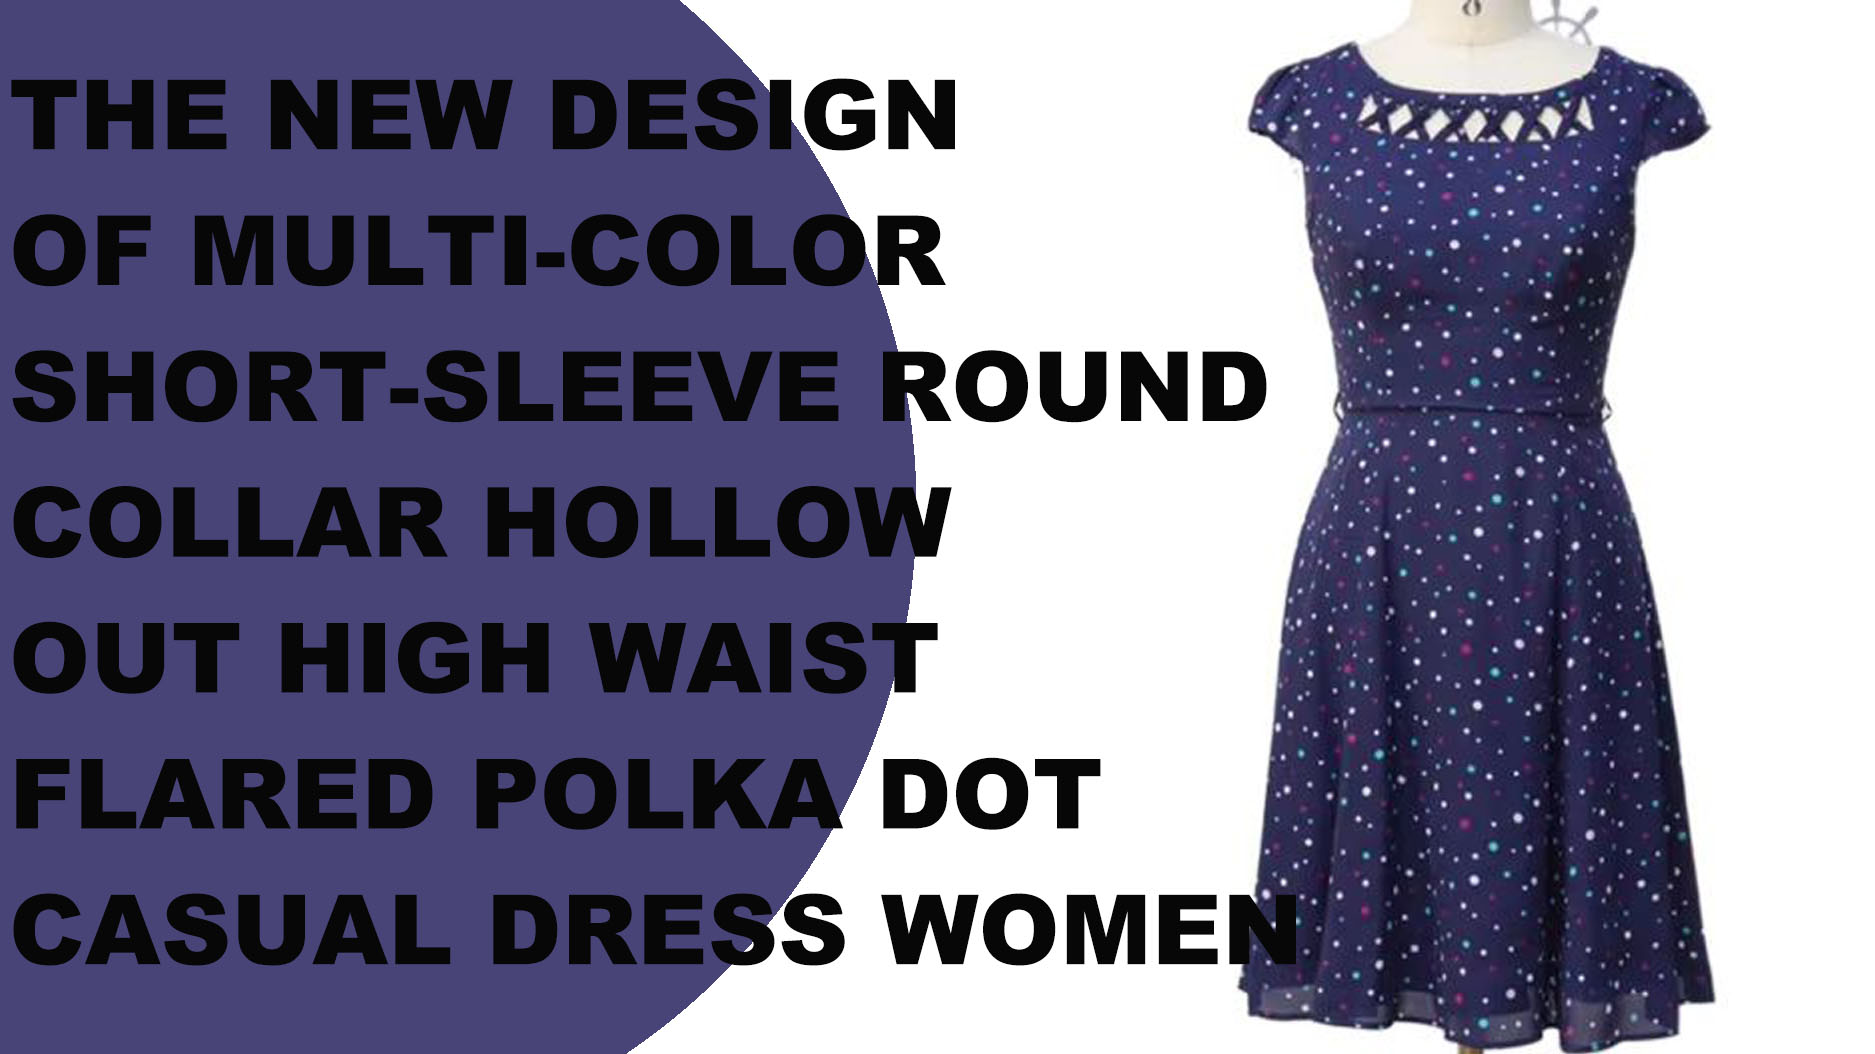 Das neue Design eines mehrfarbigen, kurzärmligen, runden Kragens mit ausgehöhltem, ausgestelltem Polka Dot-Freizeitkleid für Damen mit hoher Taille